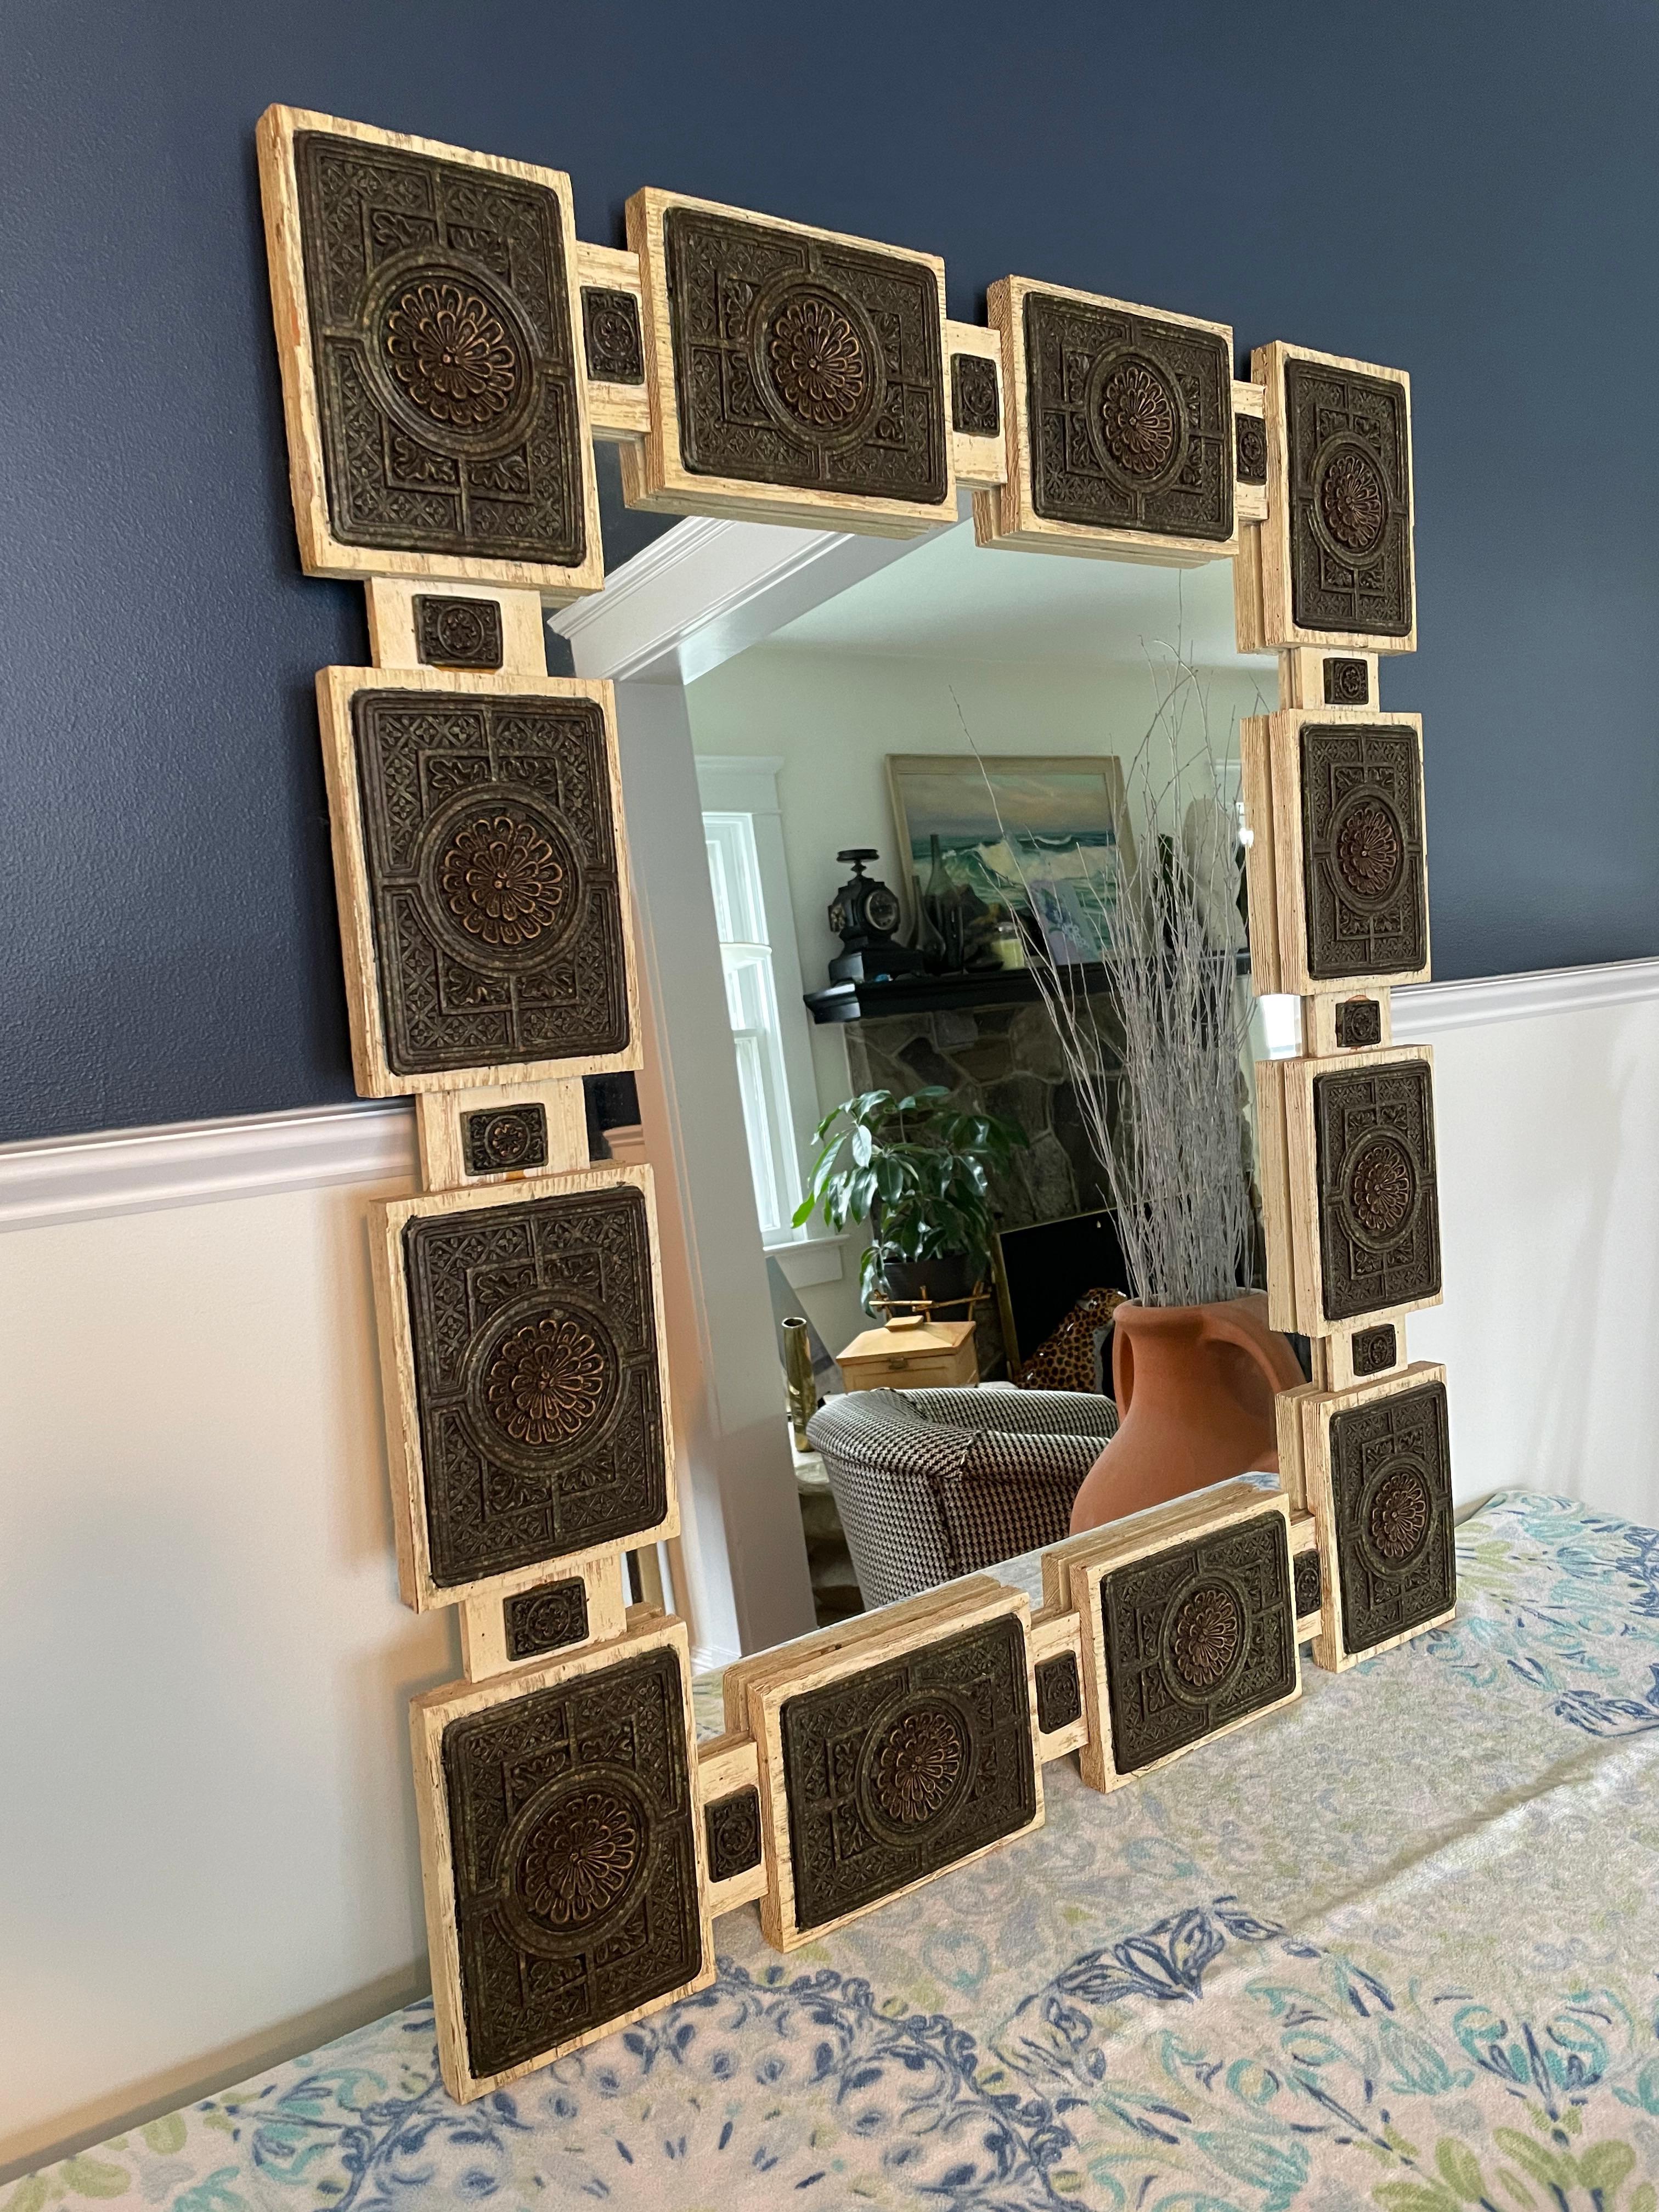 Zarebski Mexikanischer Spiegel aus gebleichter Eiche mit Harzapplikation. Hergestellt in den 1960er Jahren. Tolle Details in geschnitzten oder geformten Medaillons, die sich vom weißen Rahmen abheben.